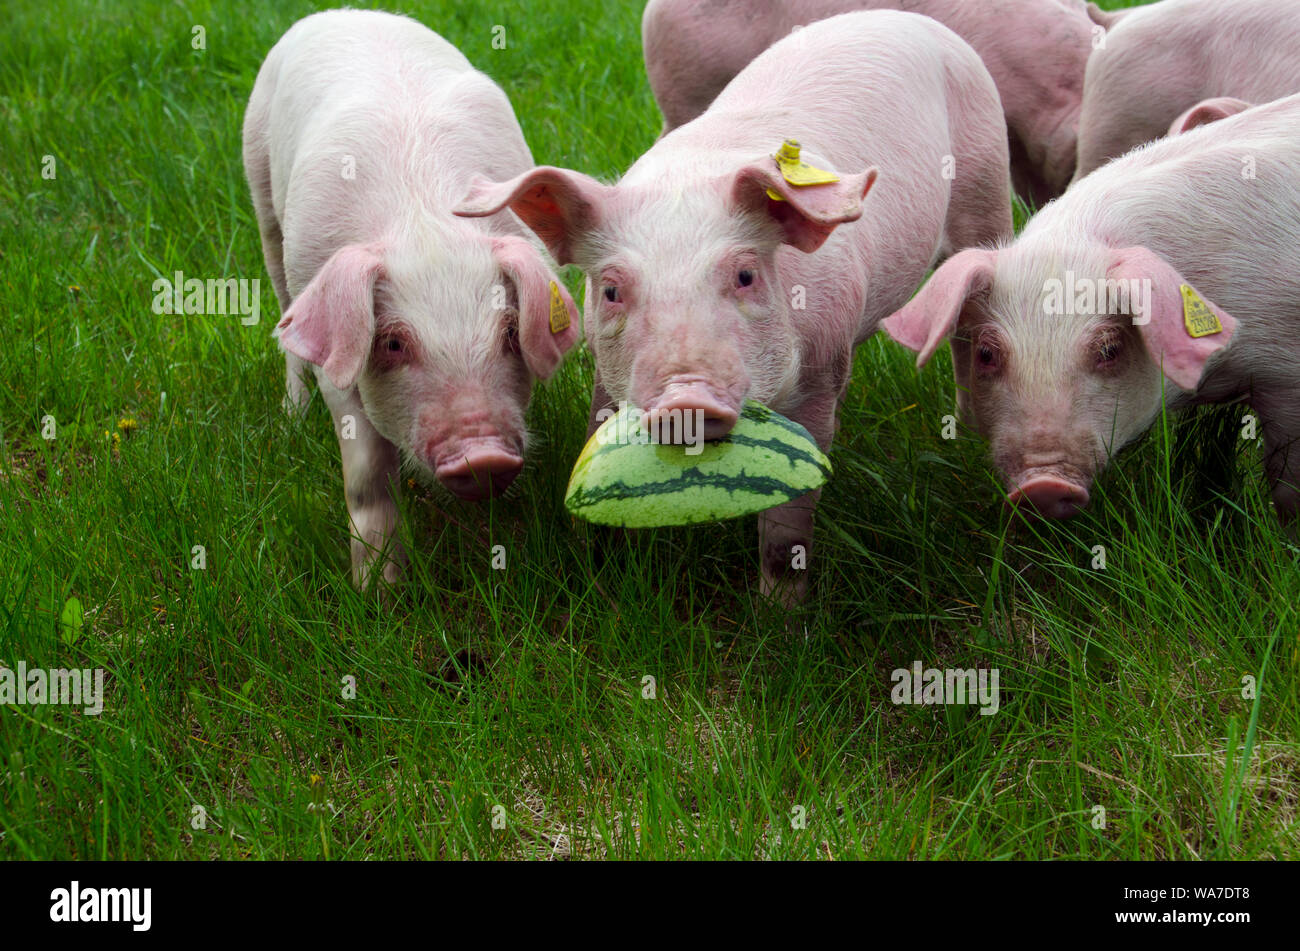 Les porcelets rose mignon ensemble en pature herbe transportant watermelon rind en bouche Banque D'Images